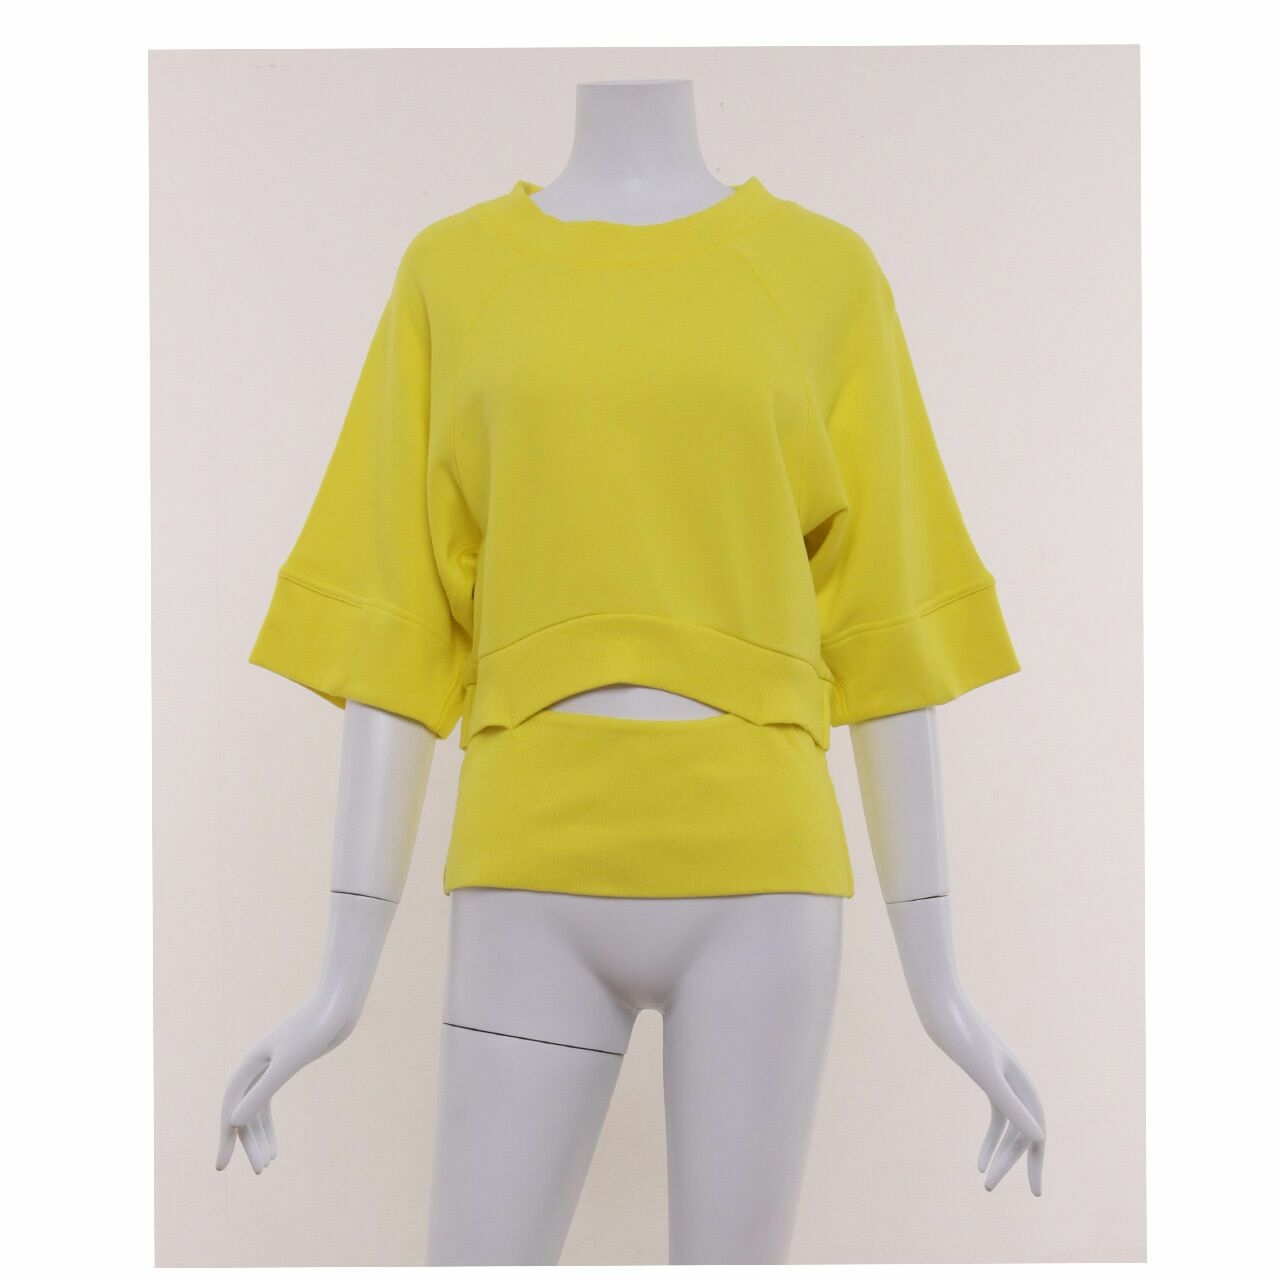 Adidas Stella McCartney Yellow Croppedsweat Shirt